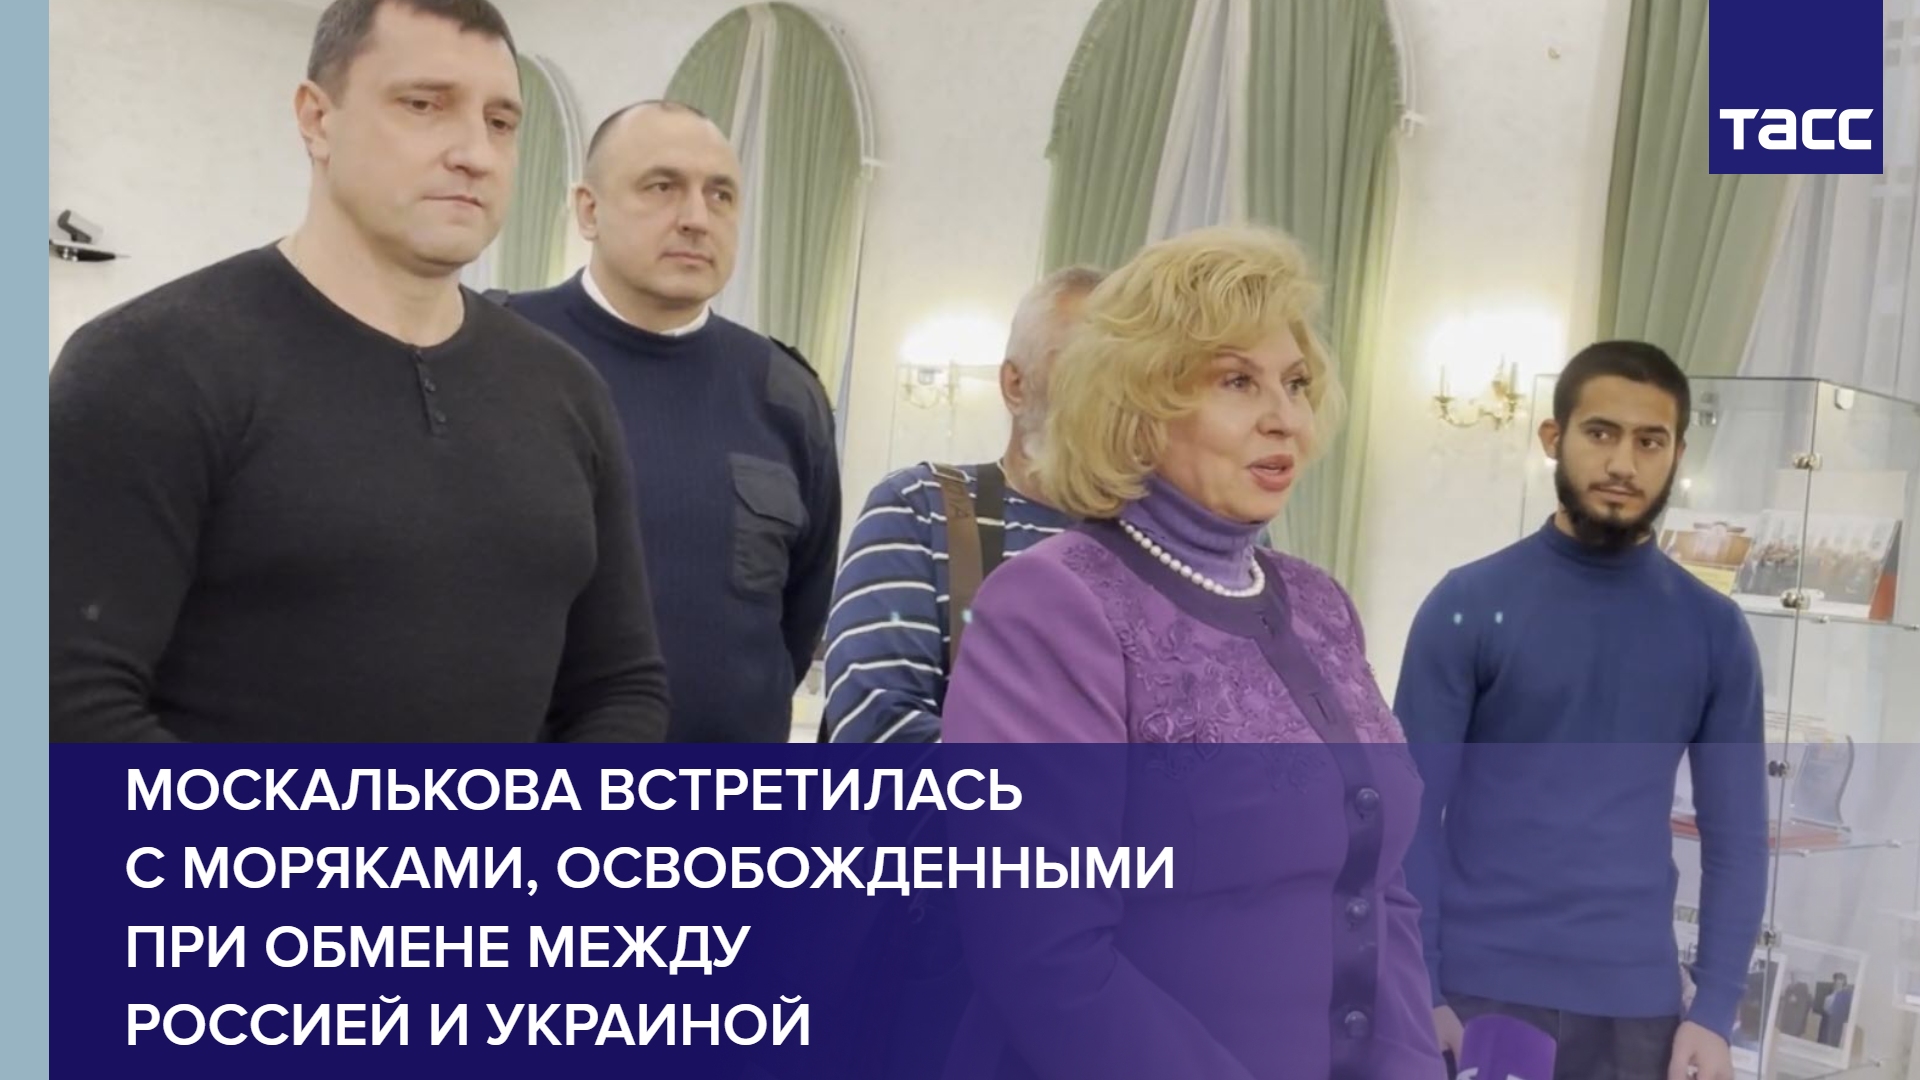 Москалькова встретилась с моряками, освобожденными при обмене между Россией и Украиной #shorts